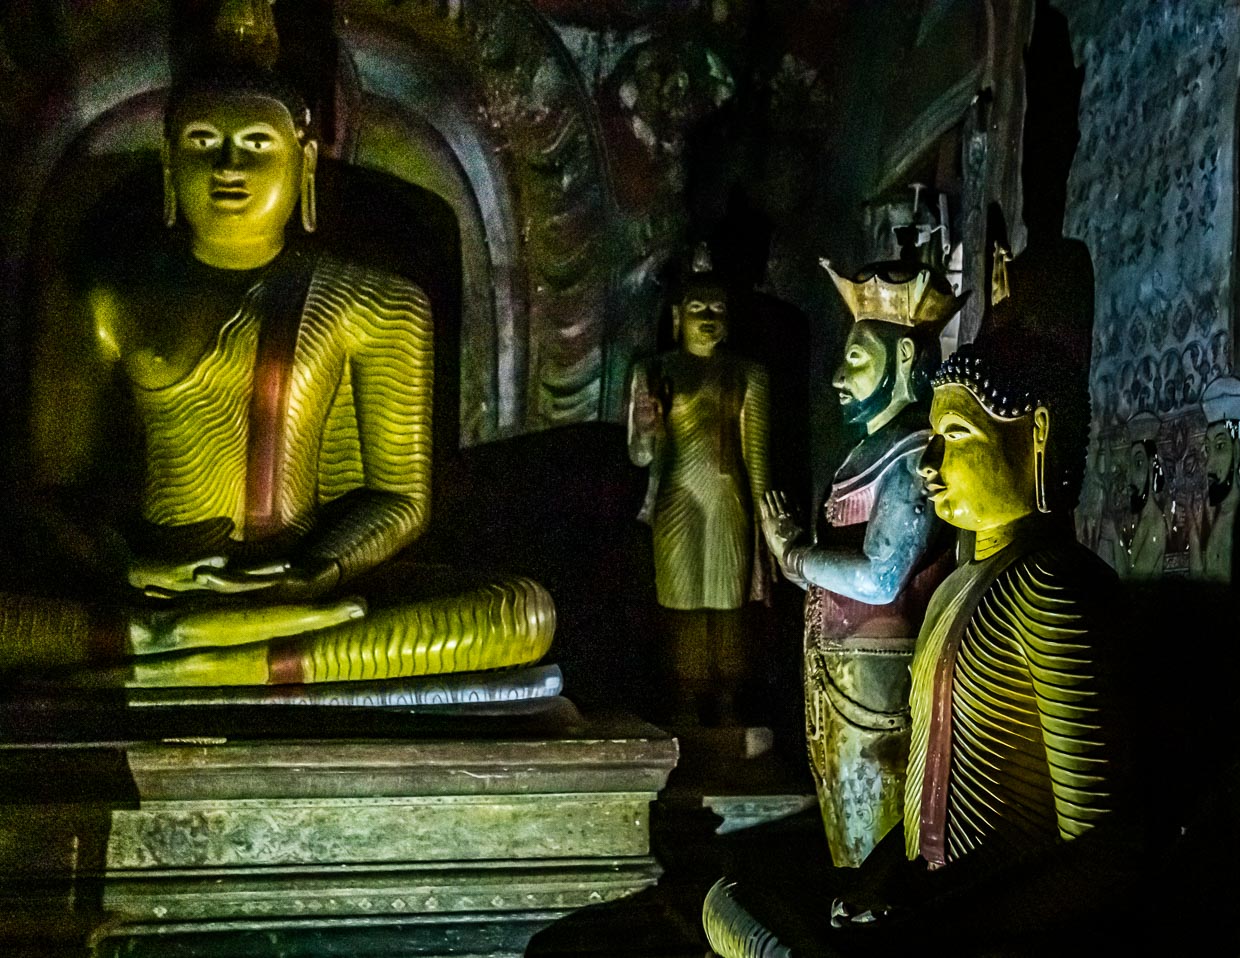 Aus Dankbarkeit errichtet: Neben Buddhas Statue die von Kirti Sri Rajasinha, der im 18. Jahrhundert als König von Kandy den Buddhismus in Sri Lanka wiederbelebt hatte / © Foto: Georg Berg